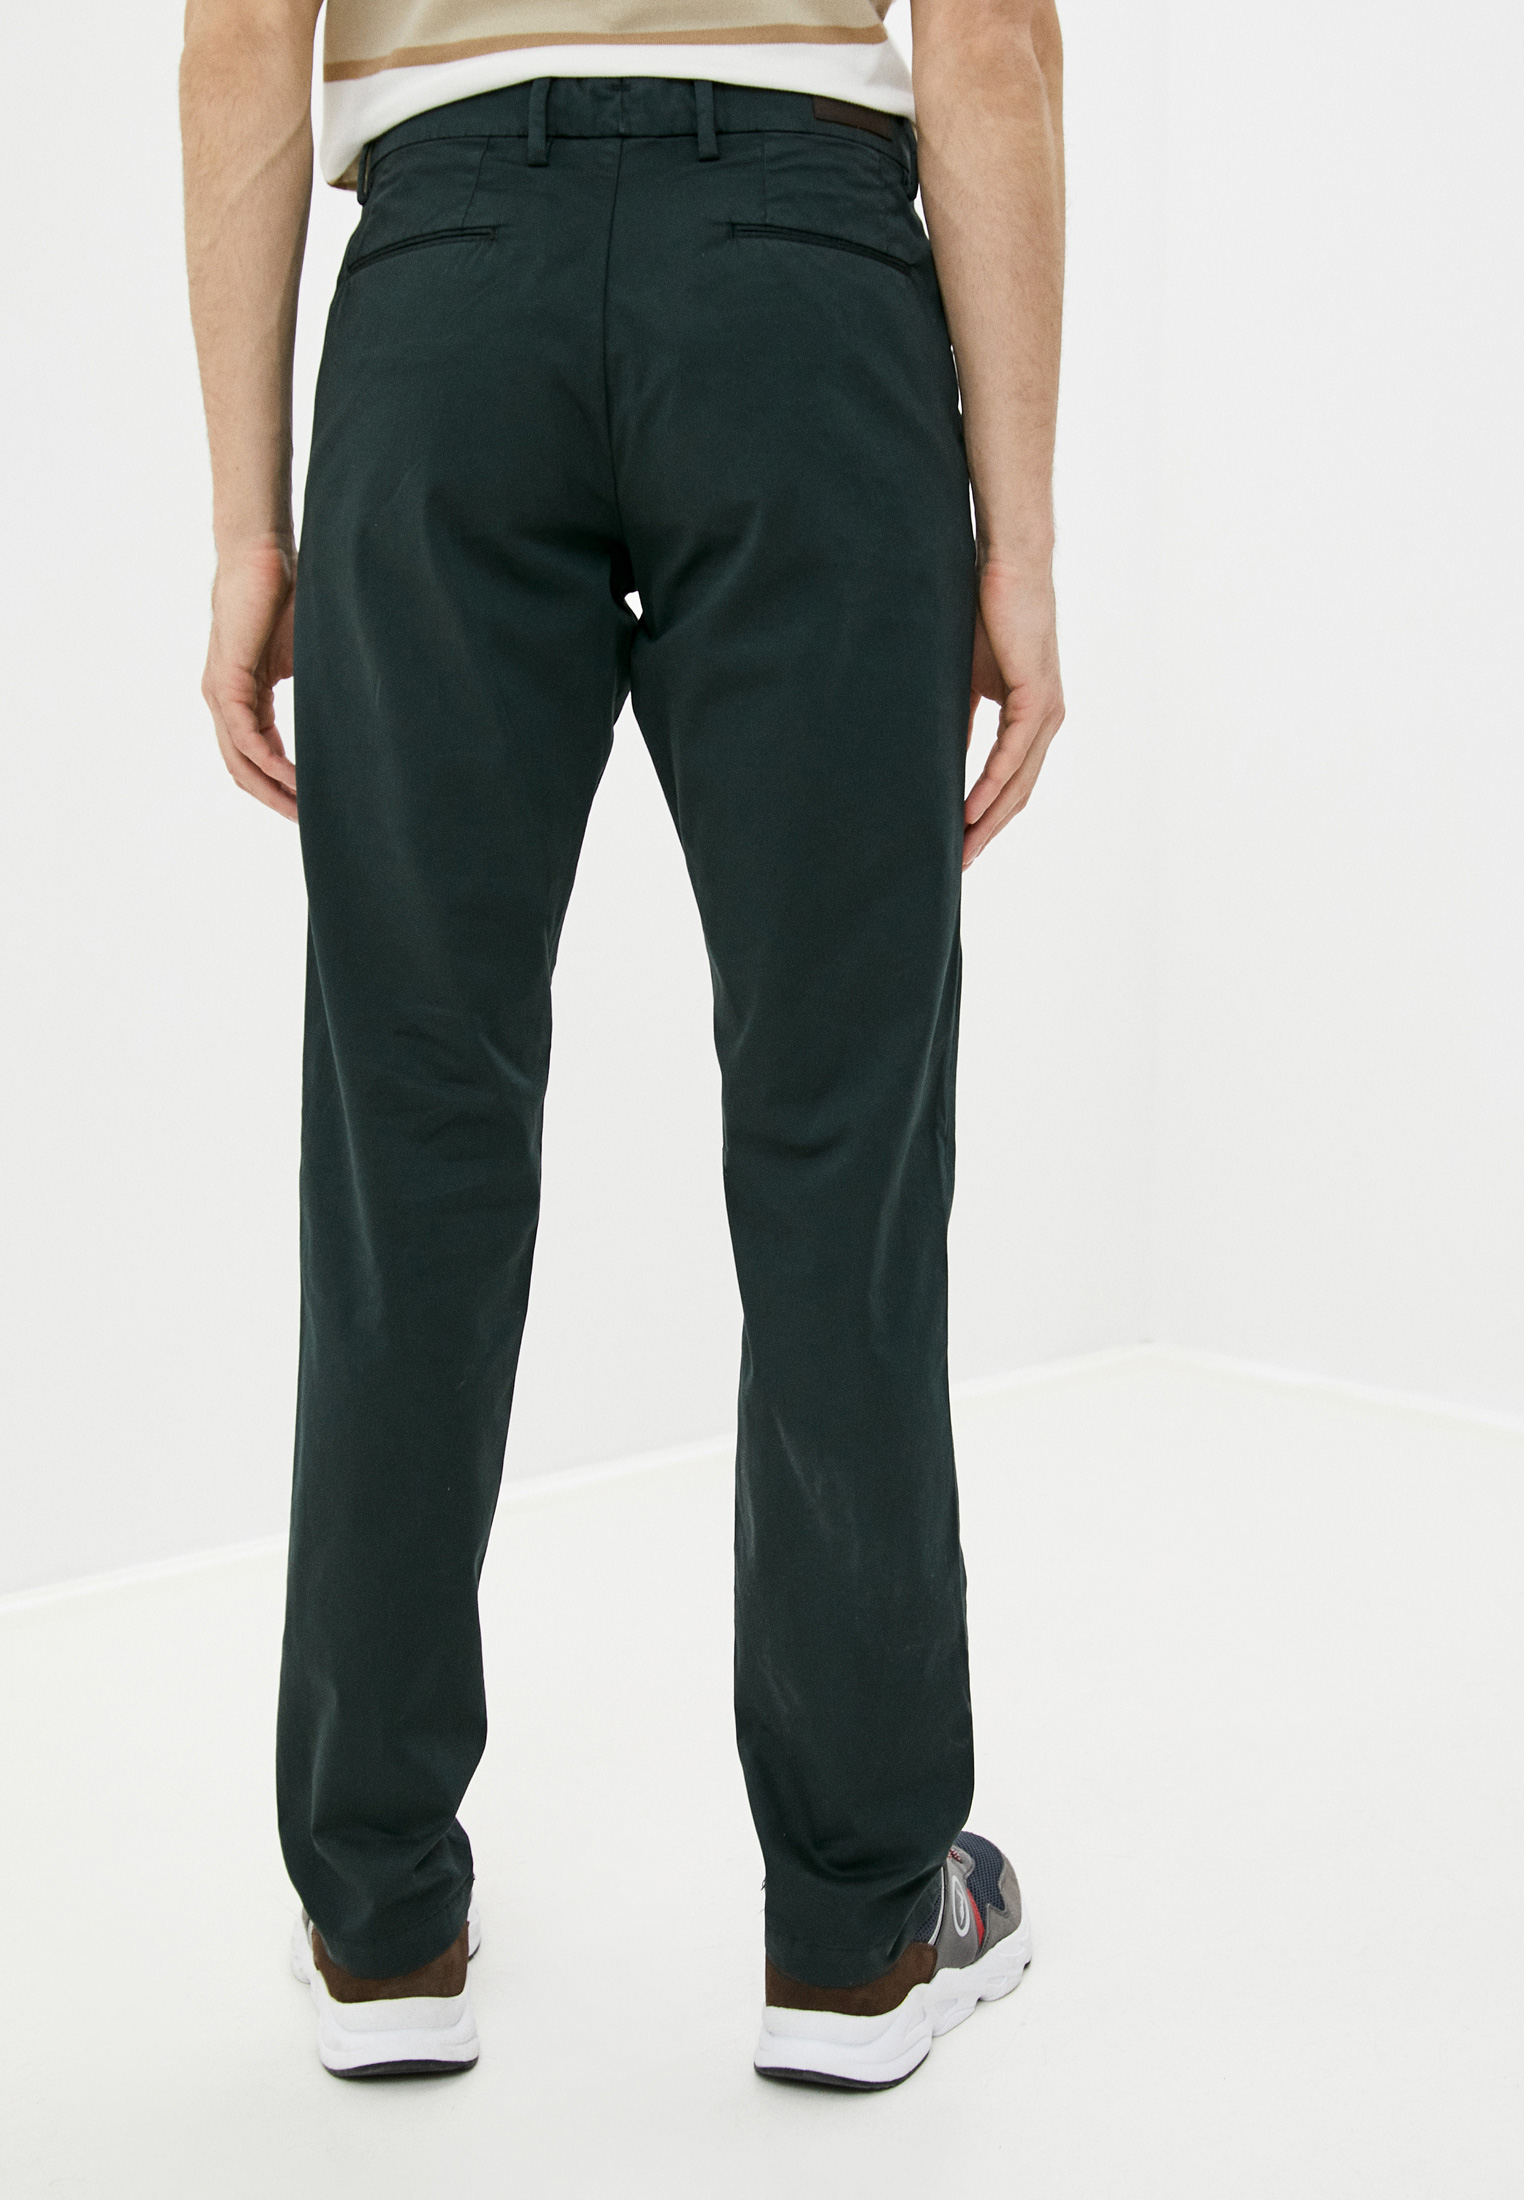 Мужские повседневные брюки Trussardi (Труссарди) 52P00000-1T005016: изображение 4